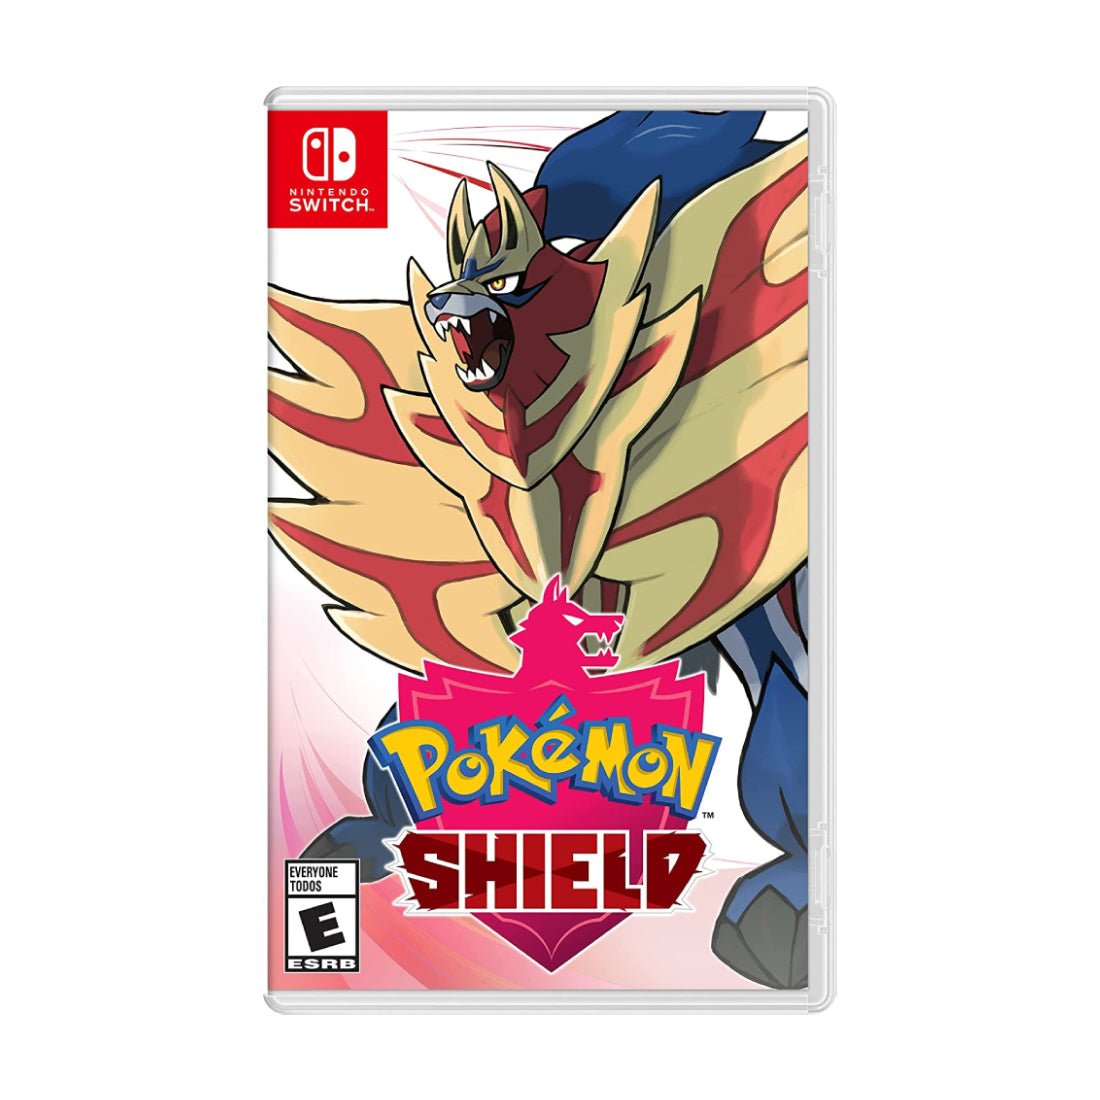 Pokémon Shield - Nintendo Switch - Store 974 | ستور ٩٧٤